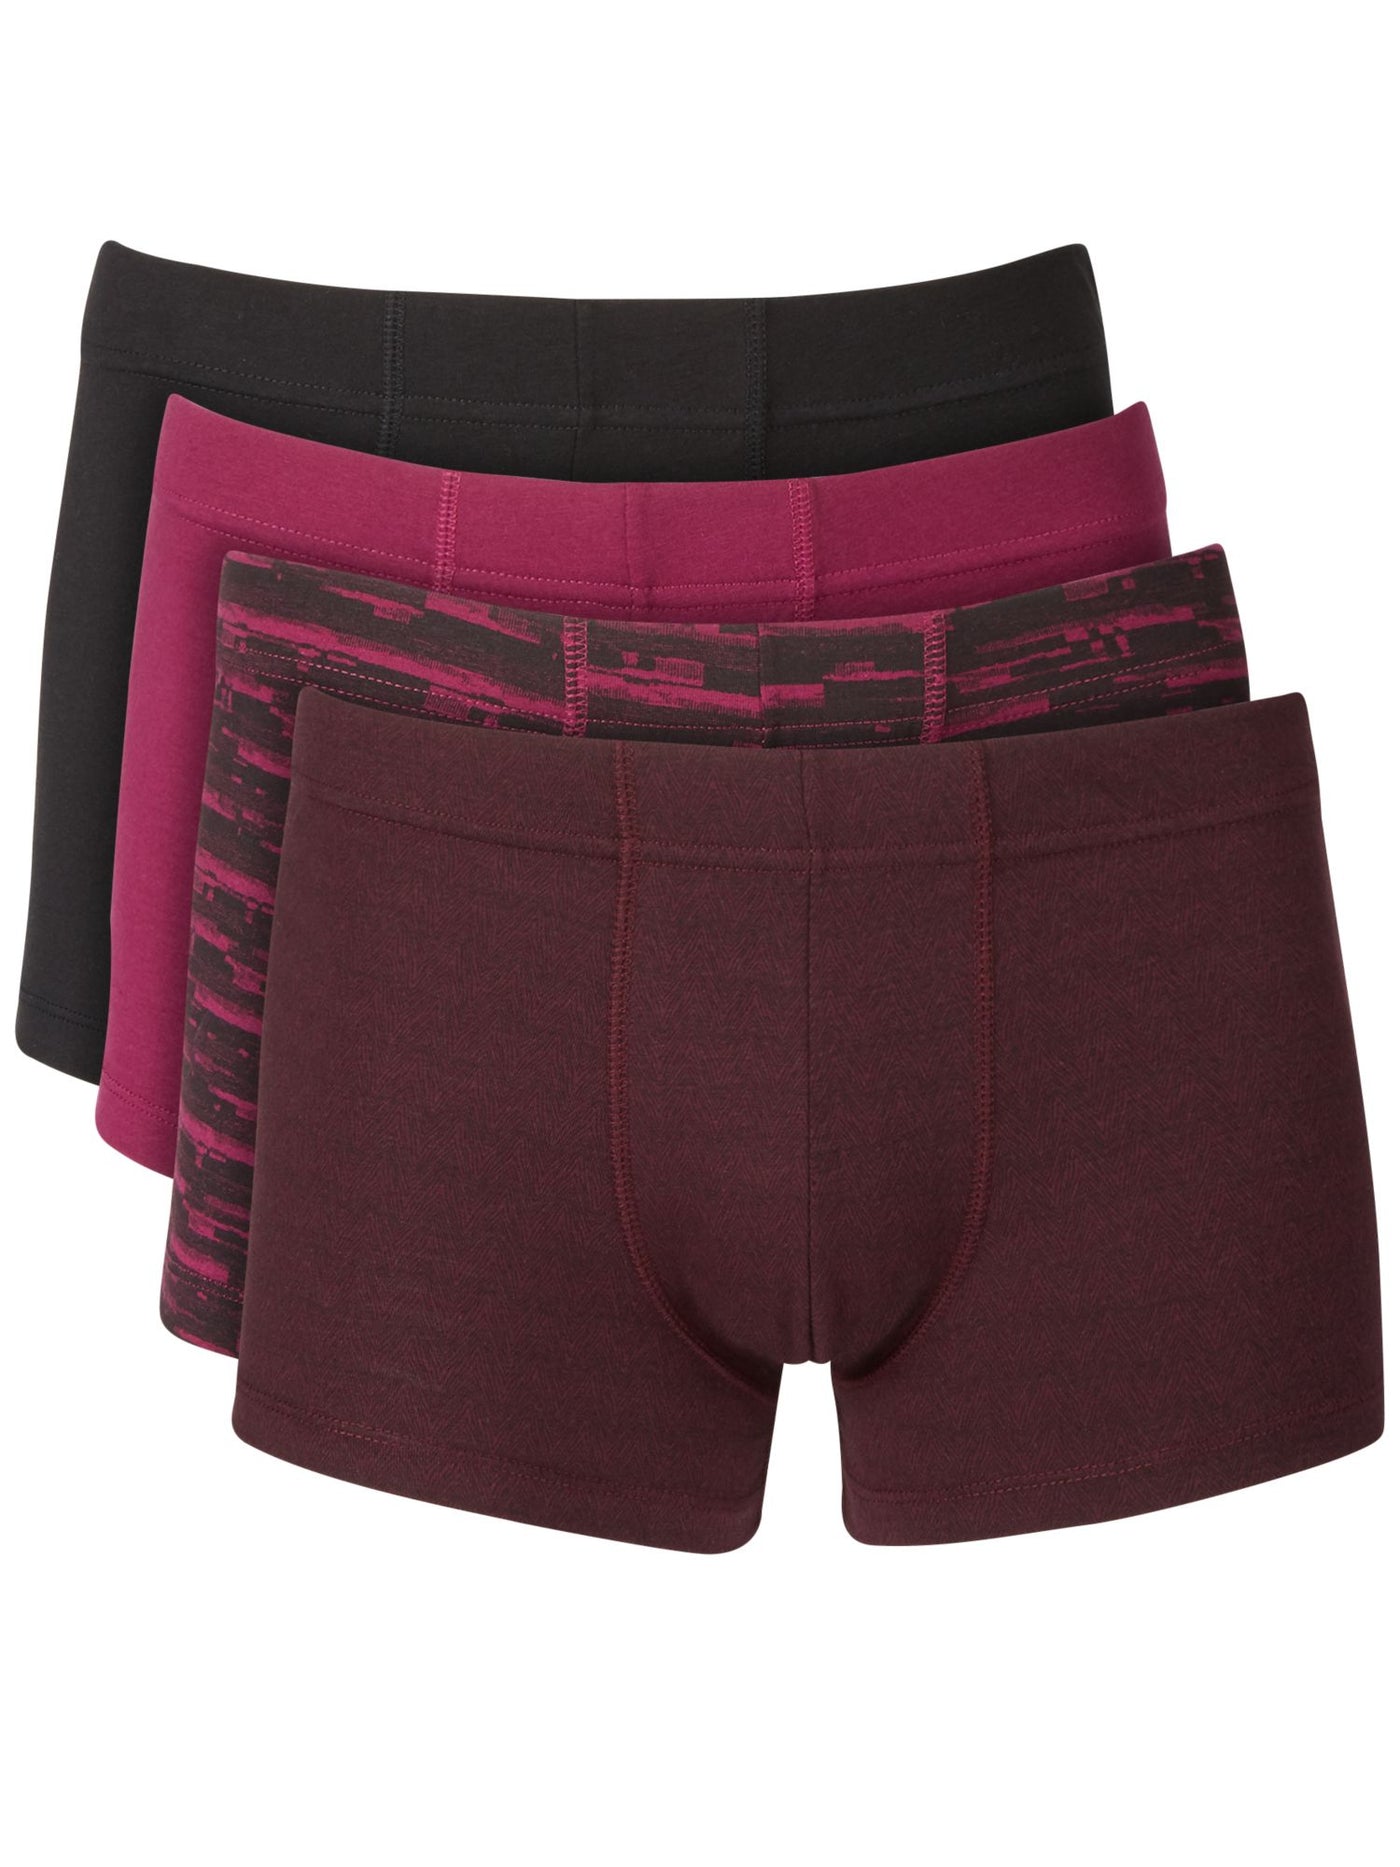 ALFATECH BY ALFANI Intimates 4 Pack Purple Boxer Brief Underwear L